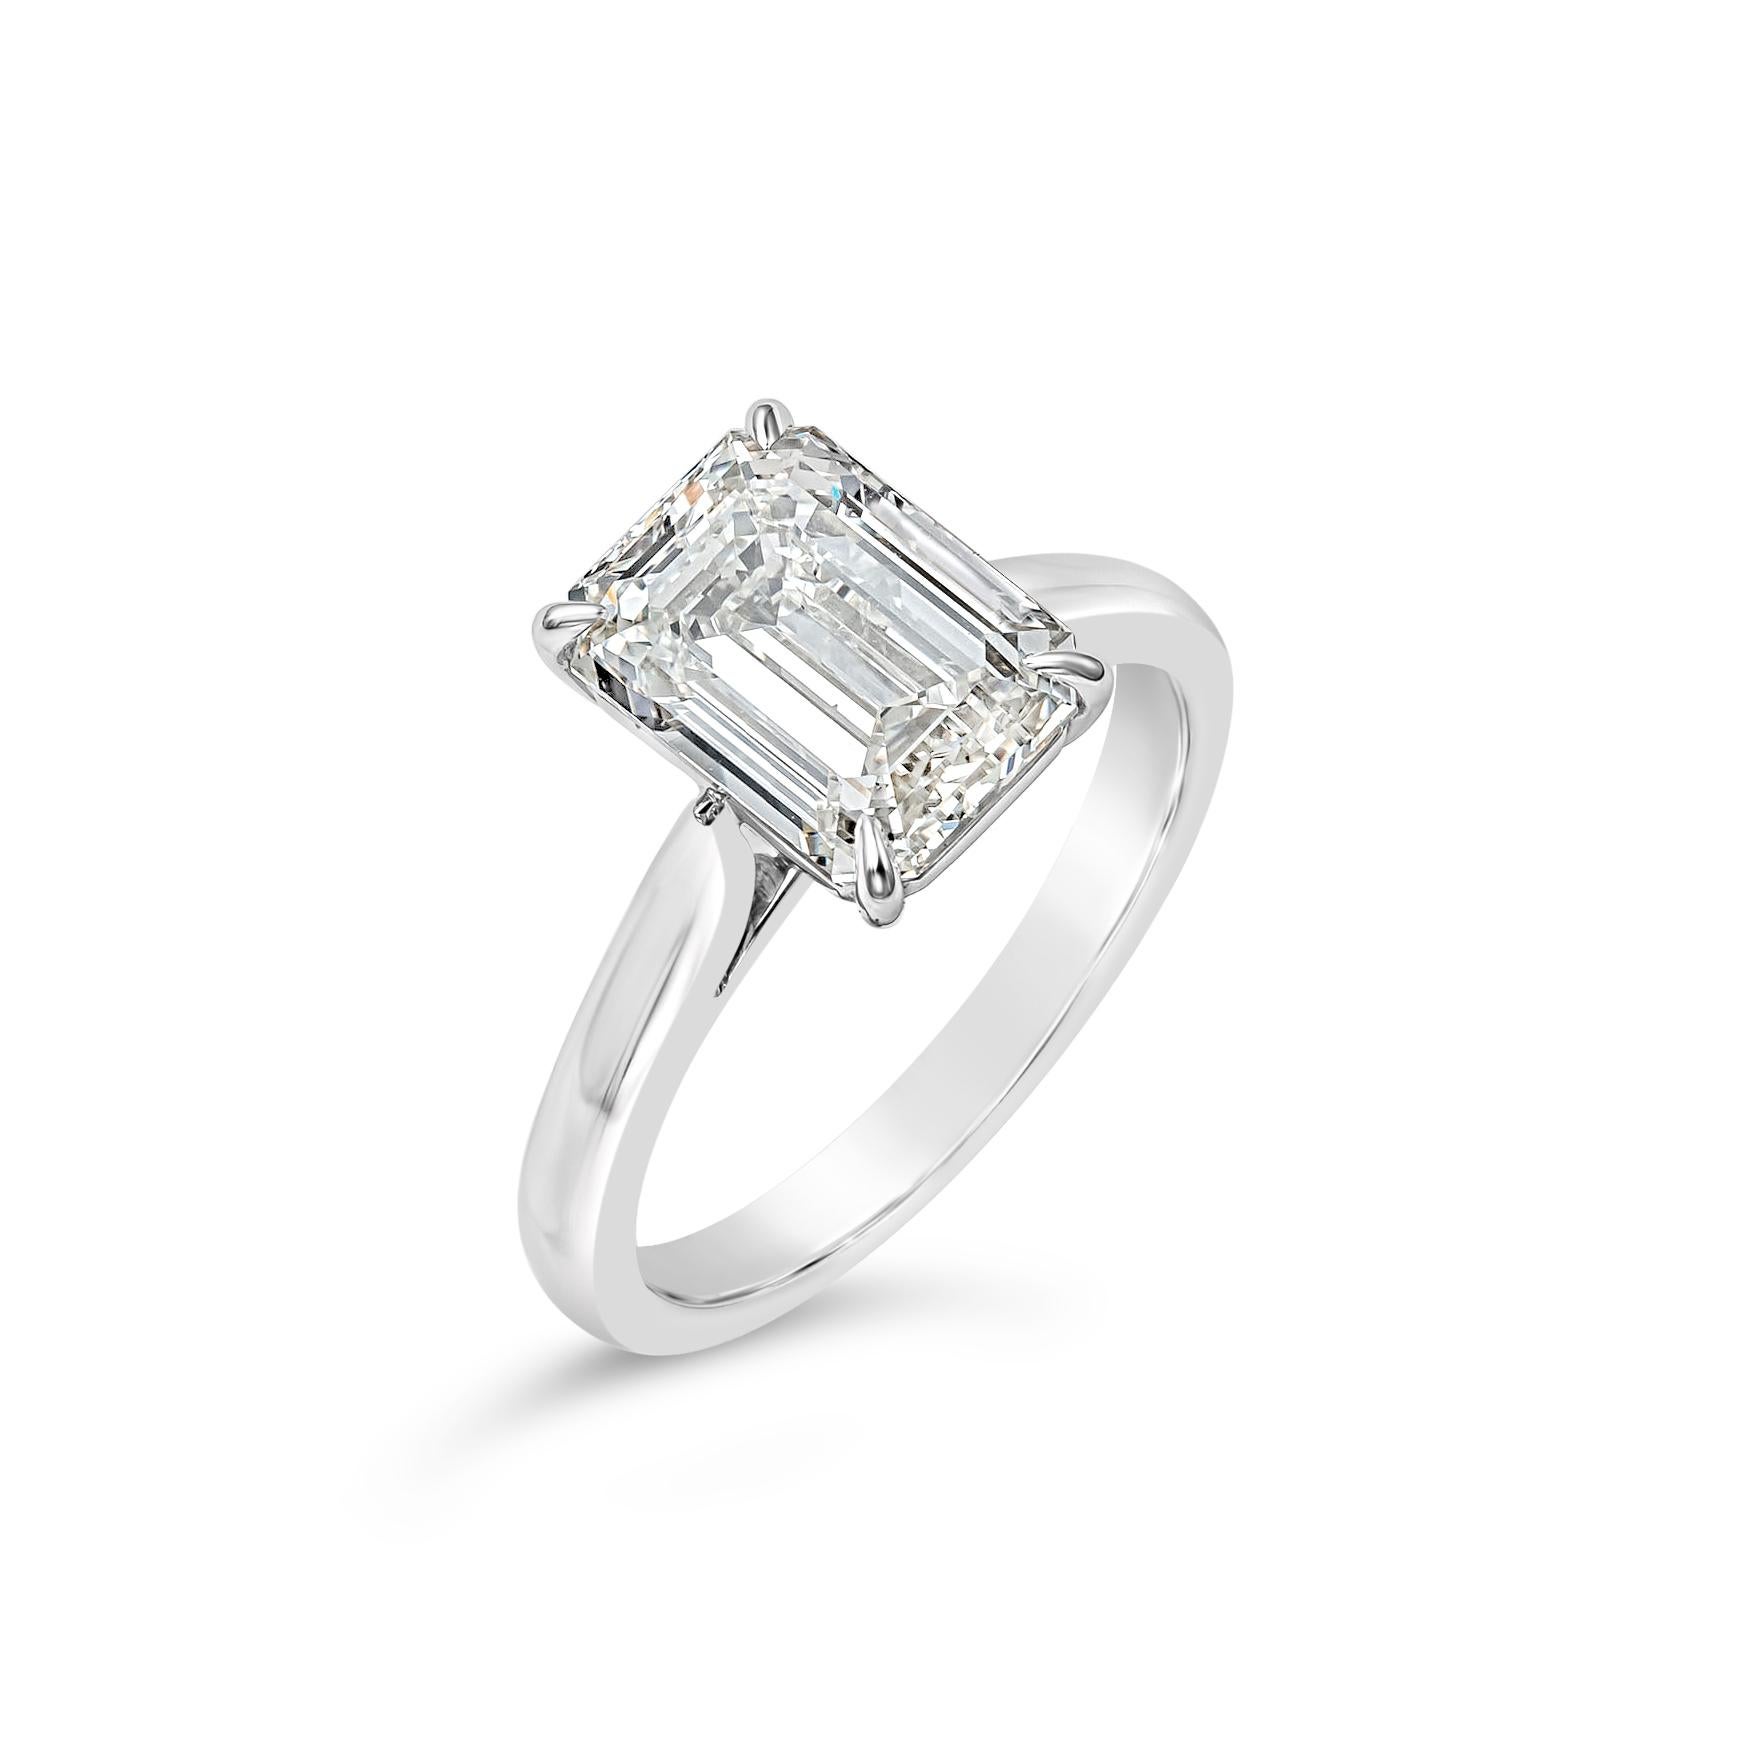 L'élégant diamant de 3,53 carats de taille émeraude, certifié par la GIA de couleur I et de pureté SI1, est serti dans une monture panier classique à quatre griffes. Fabriqué avec précision en platine poli. Taille 6.25 US redimensionnable sur